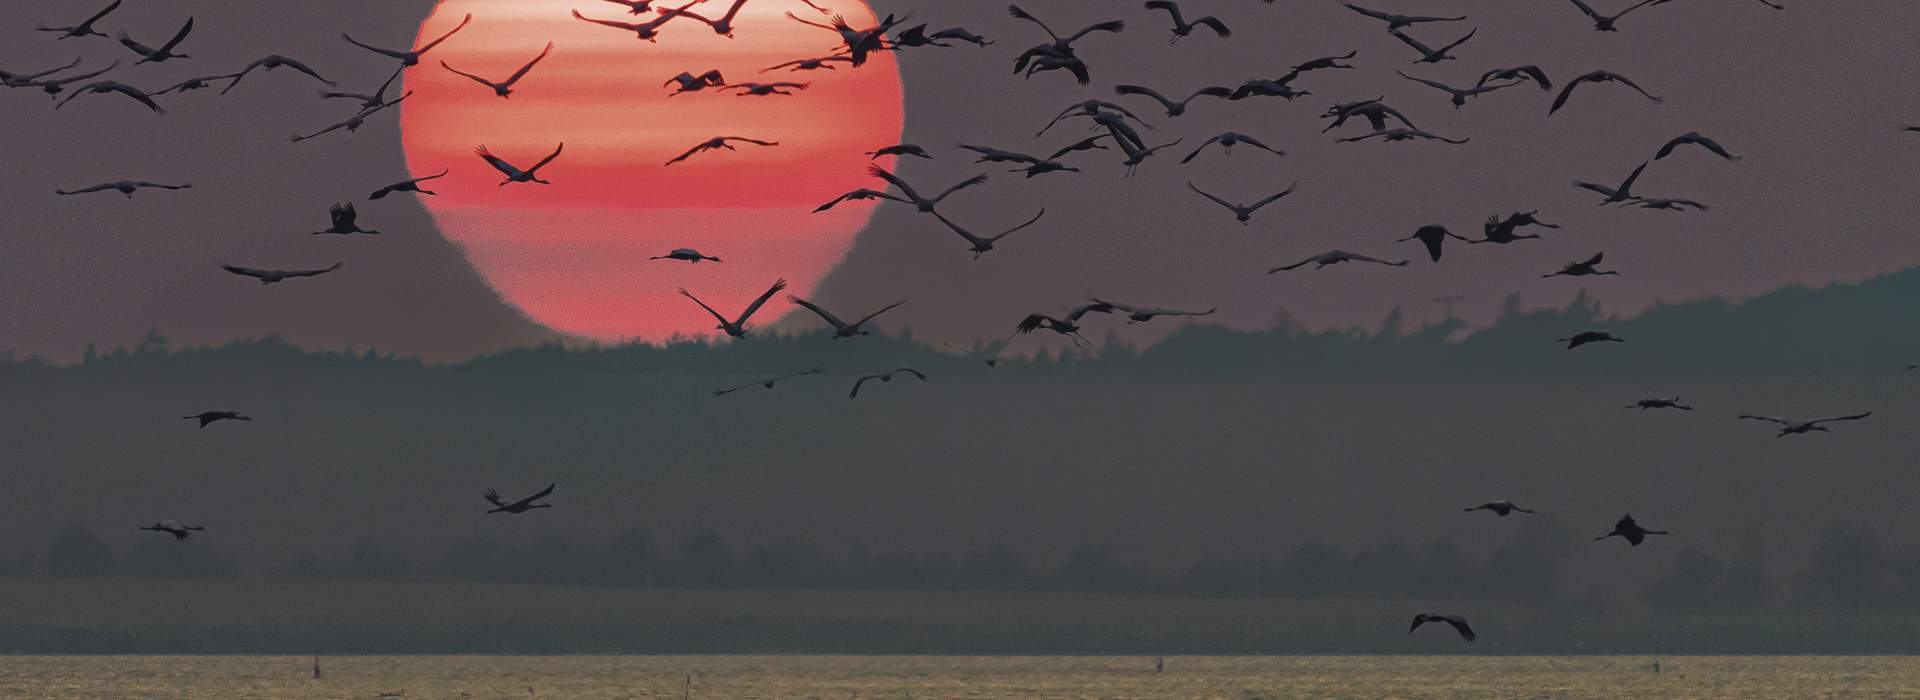 Faszination Kranich – unterwegs mit den Vögeln des Glücks